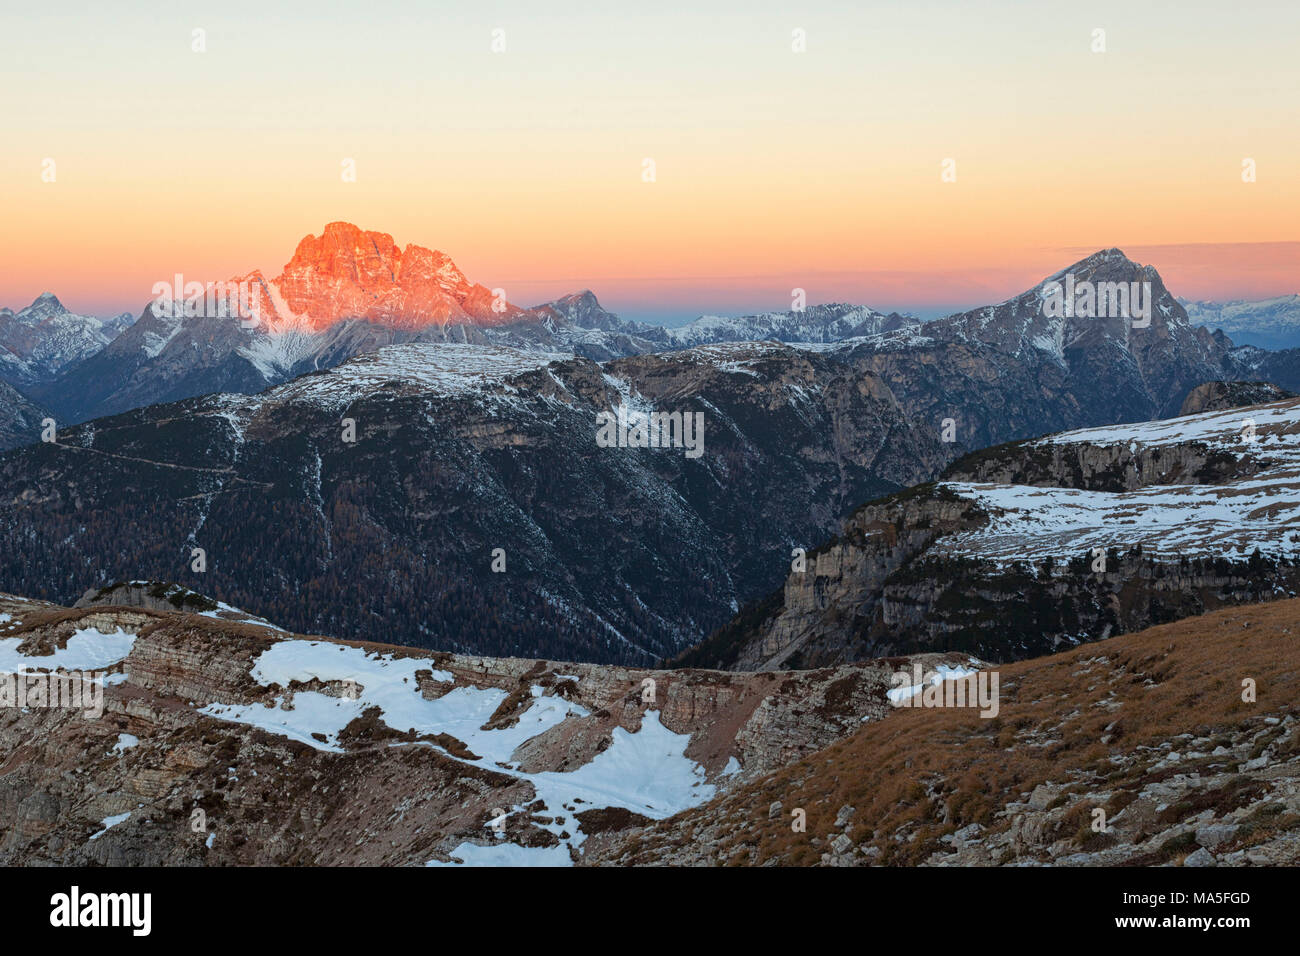 Dawn from Campedelle Mount, Auronzo di Cadore, Belluno Province, Veneto, Italy Stock Photo